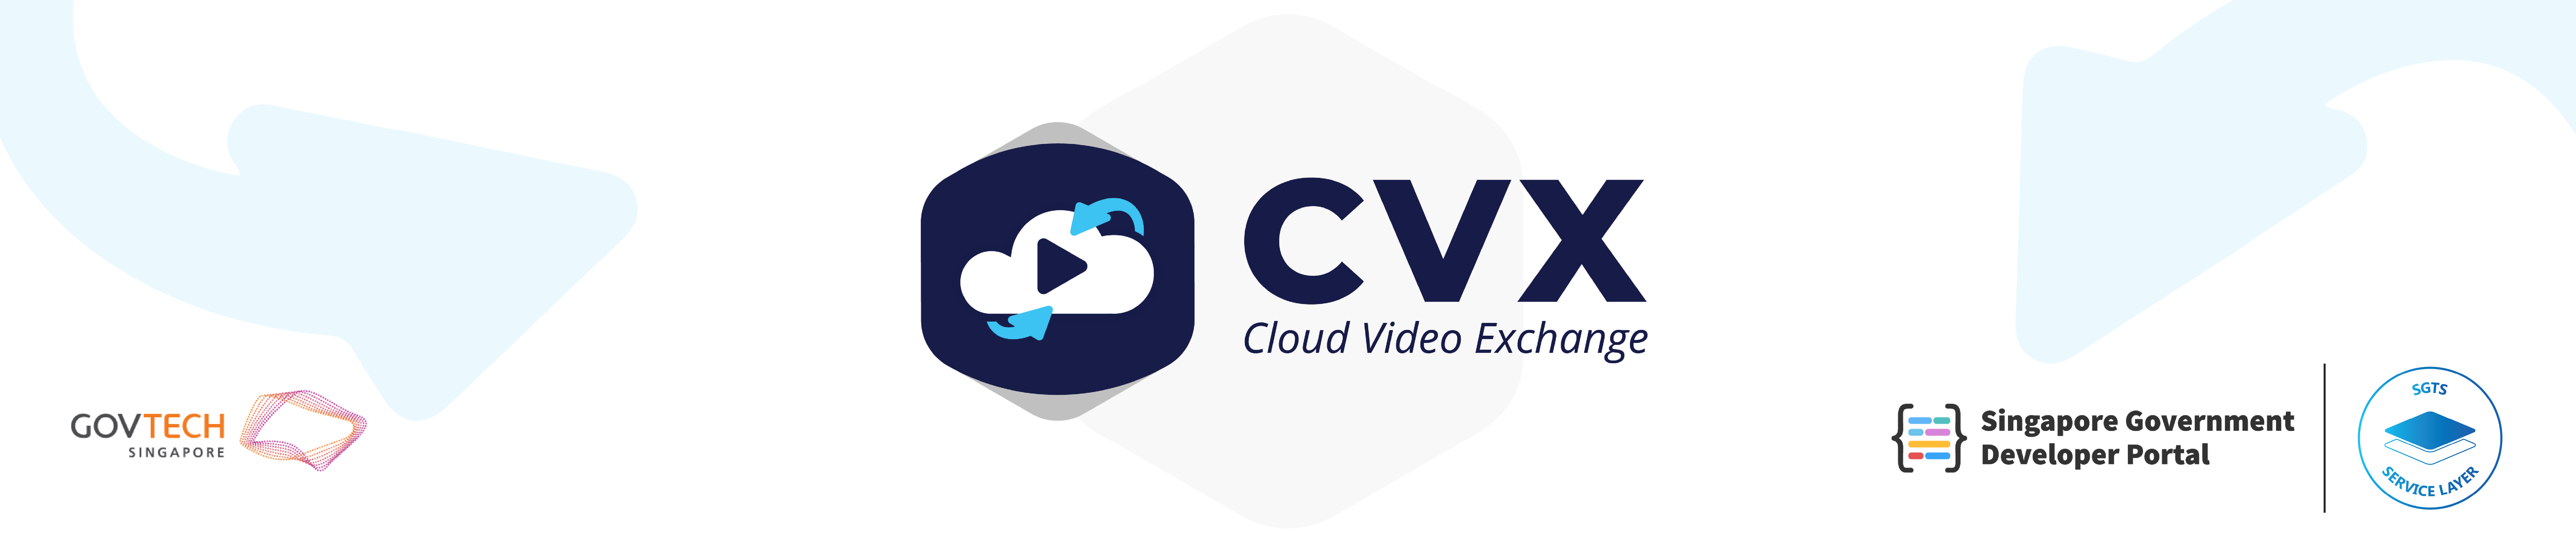 Cloud Video Exchange header banner